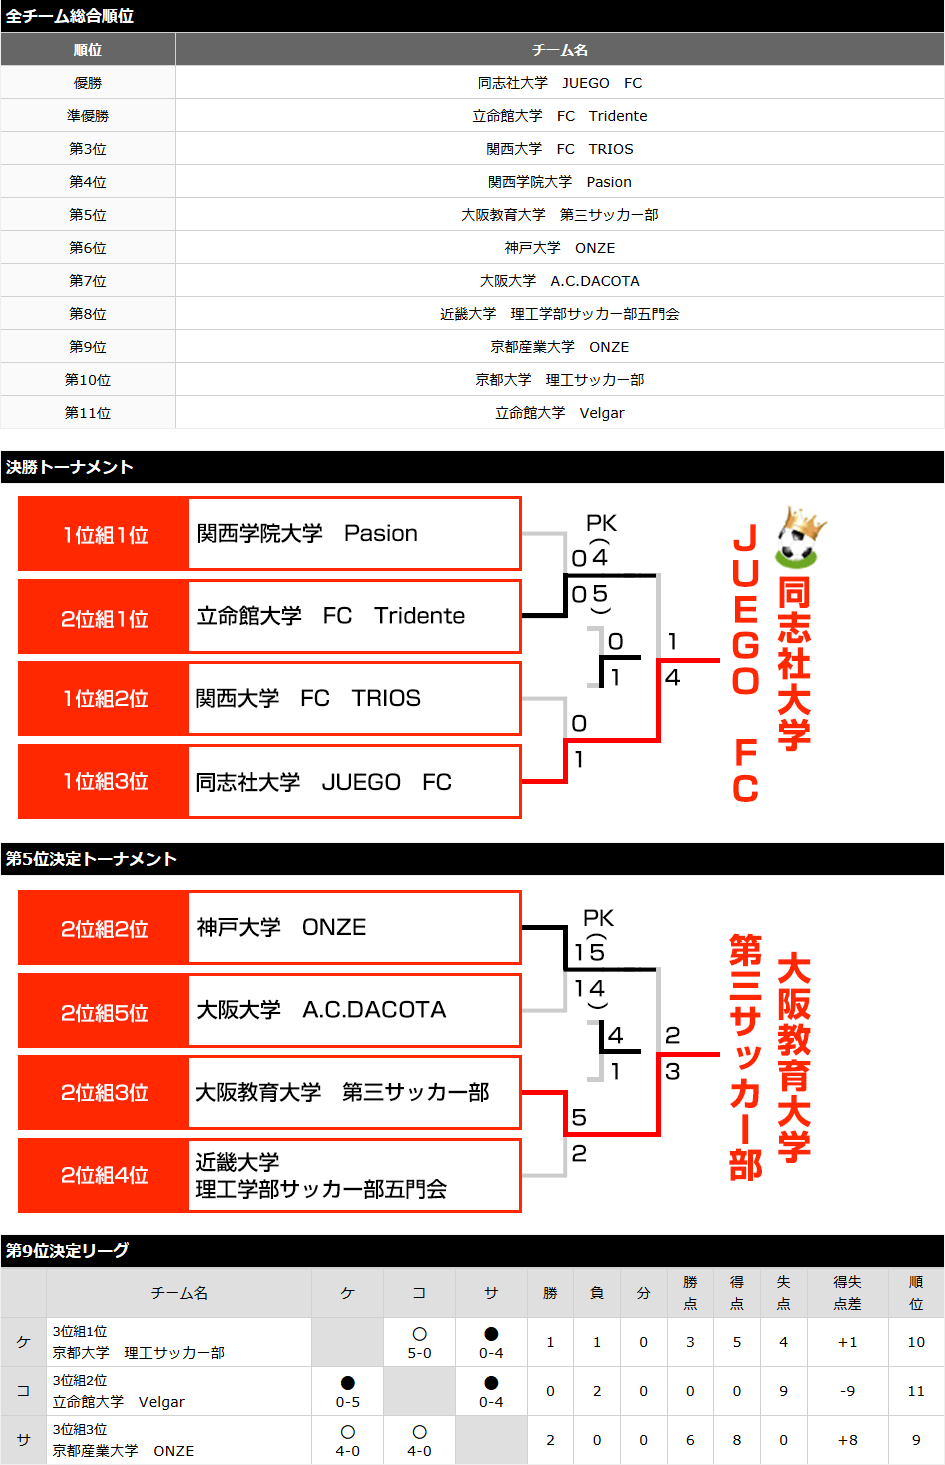 関西予選2015 トーナメント表